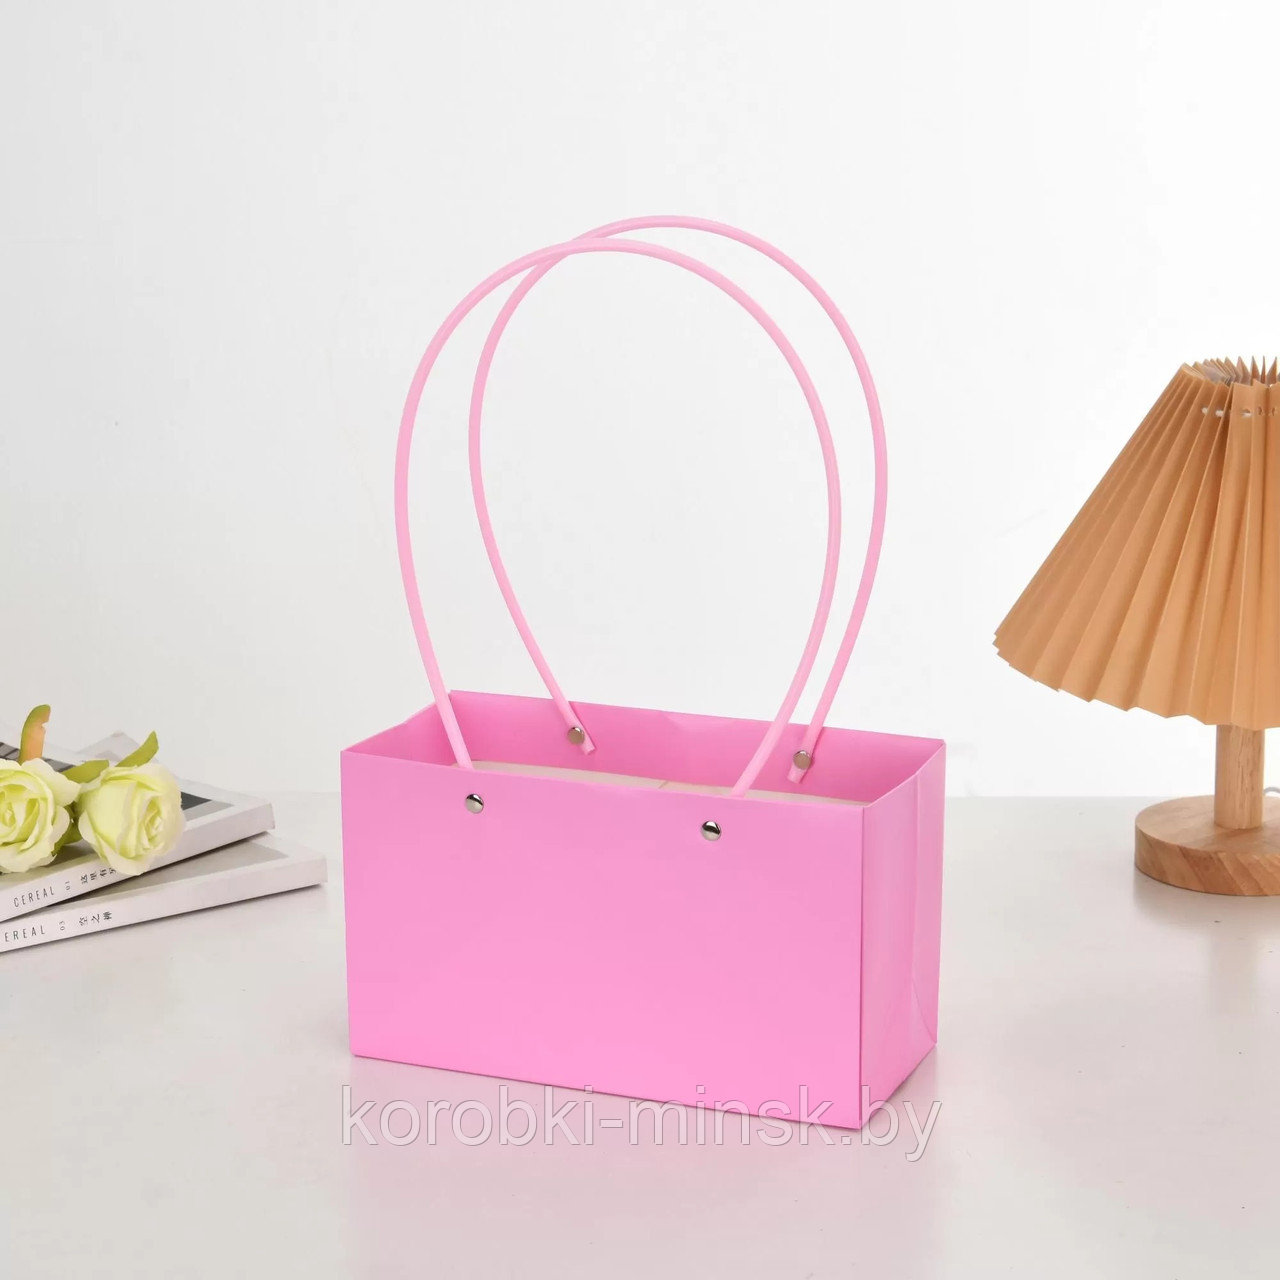 Пакет подарочный "Мастхэв"  22*11*14см (10 шт/уп)  прямоугольный, Розовый фламинго